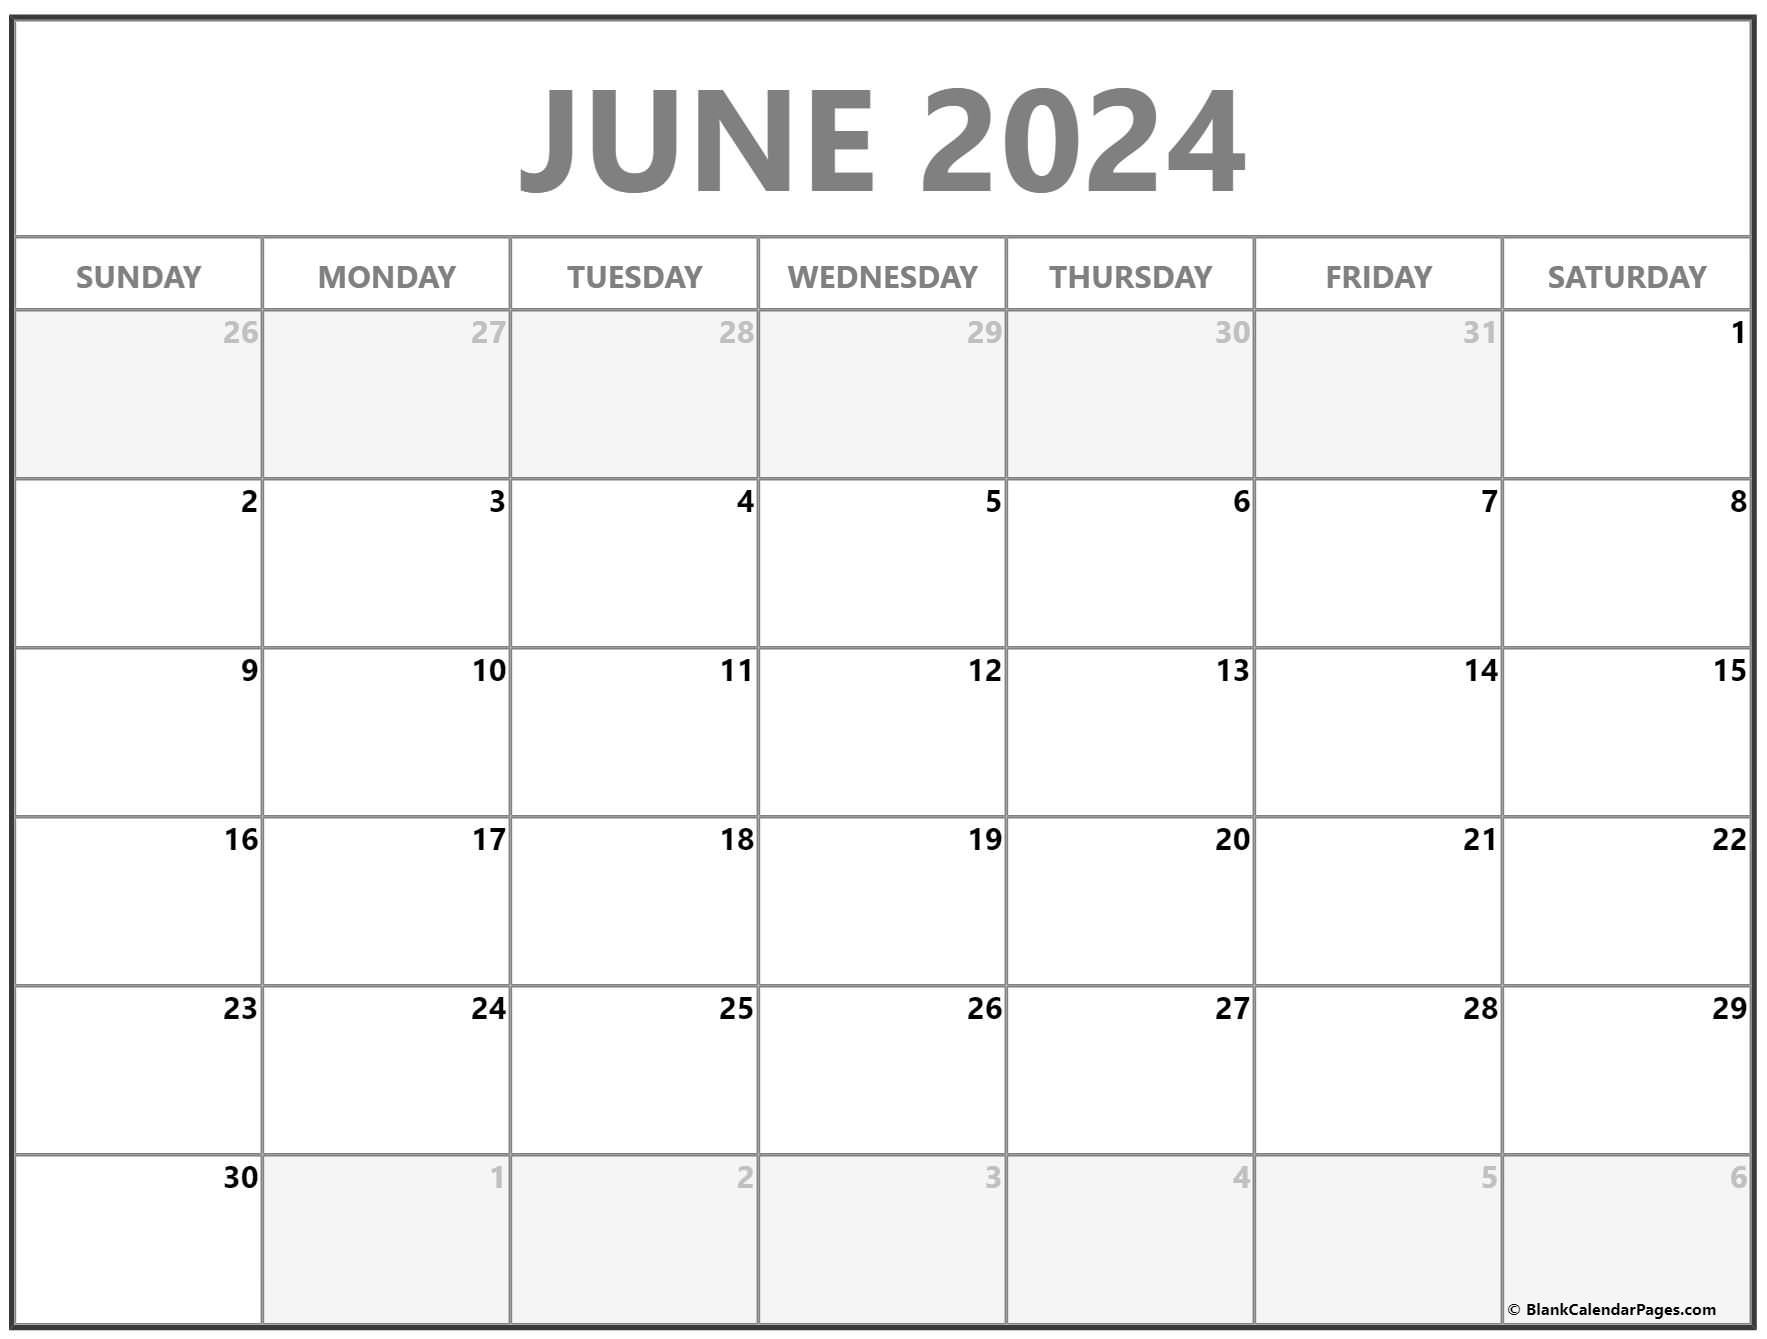 Free Printable June 2022 Calendar June 2022 Calendar | Free Printable Calendar Templates